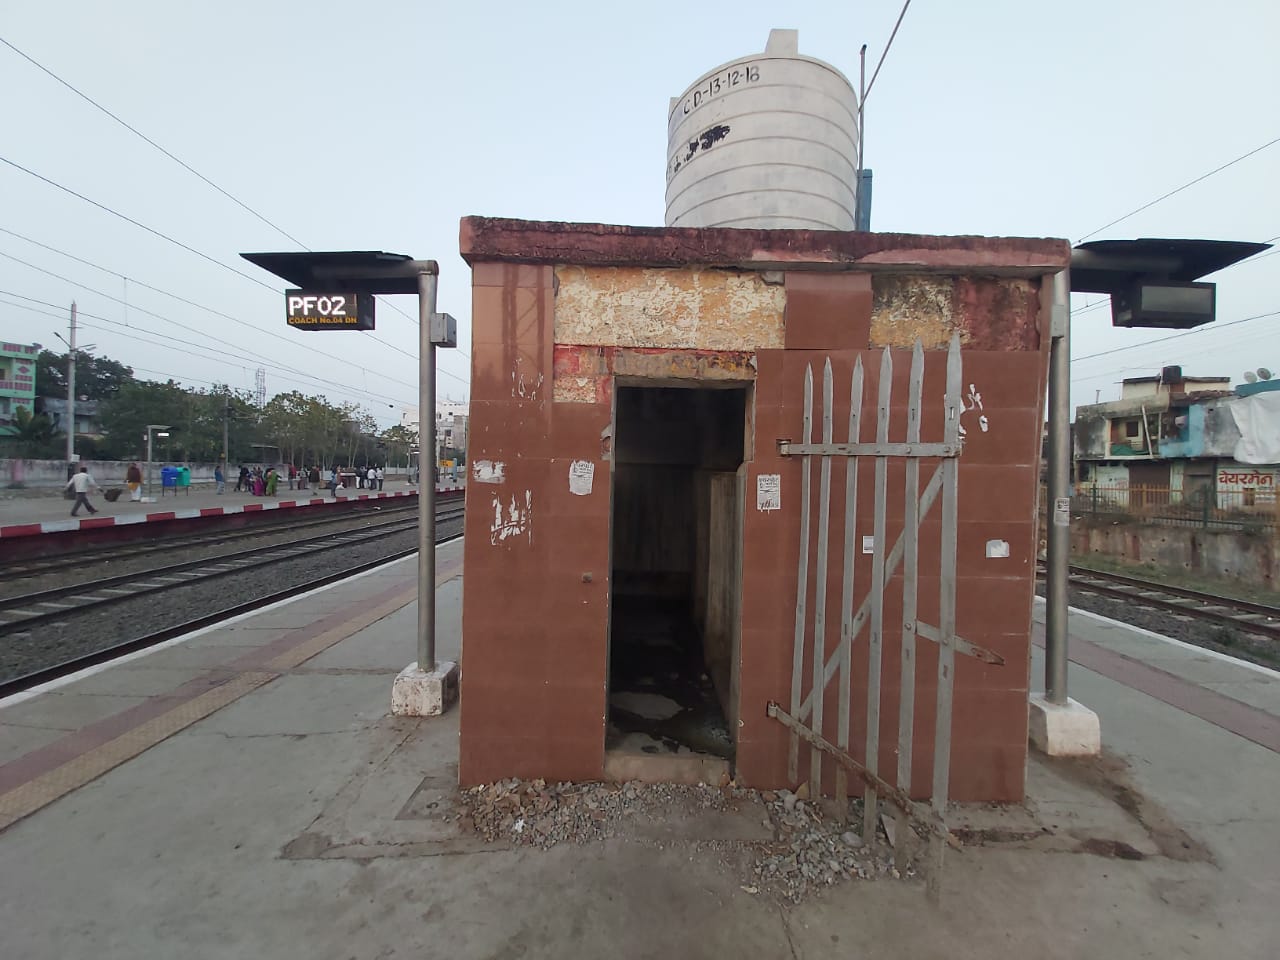 विदिशा स्टेशन पर बना शौचालय हो रहा है चोक, यात्रियों को करना पड़ रहा है कठिनाइयों का सामना | New India Times